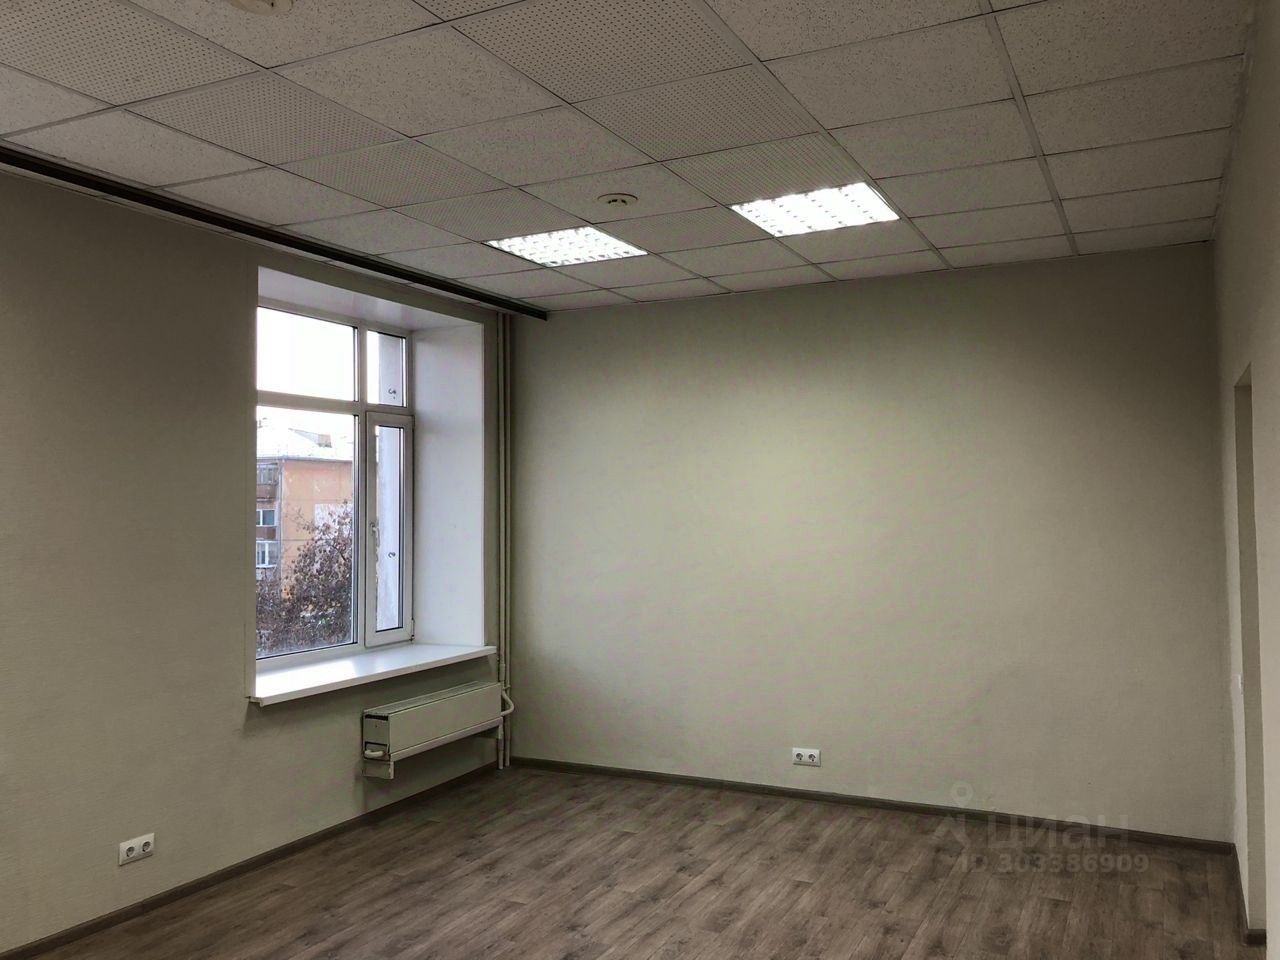 Светлый офис 22 кв.м, 3 этаж, Екатеринбург. Просторное окно, современное освещение, свежий ремонт. Подходит для любого бизнеса.